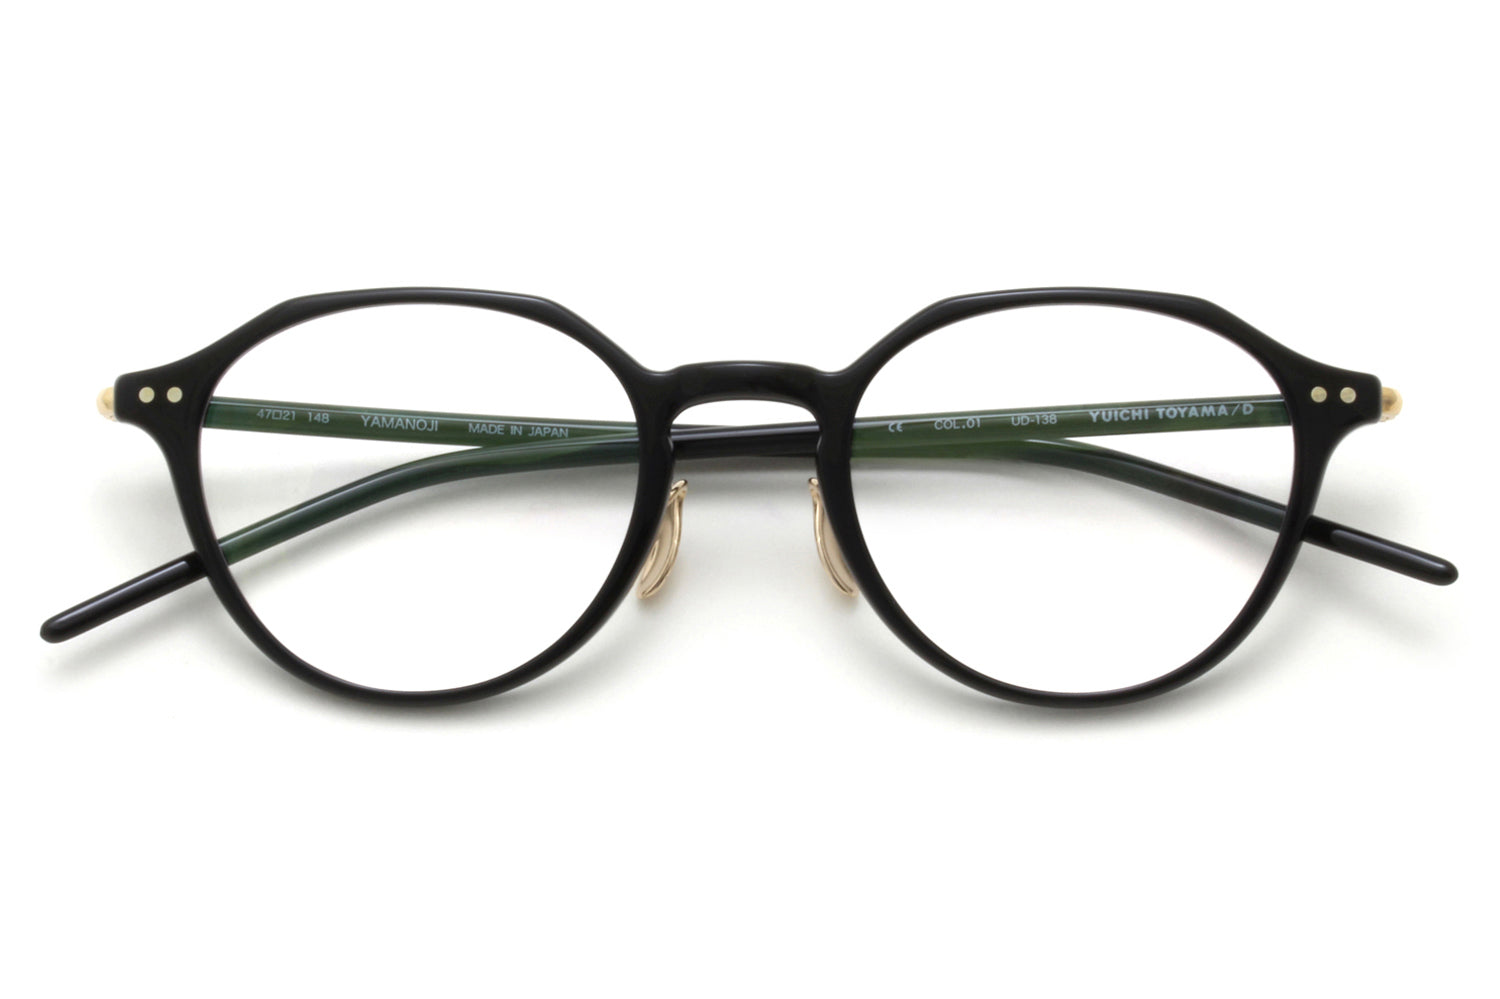 Yuichi Toyama Yamanoji (UD-138) Eyeglasses Specs Collective